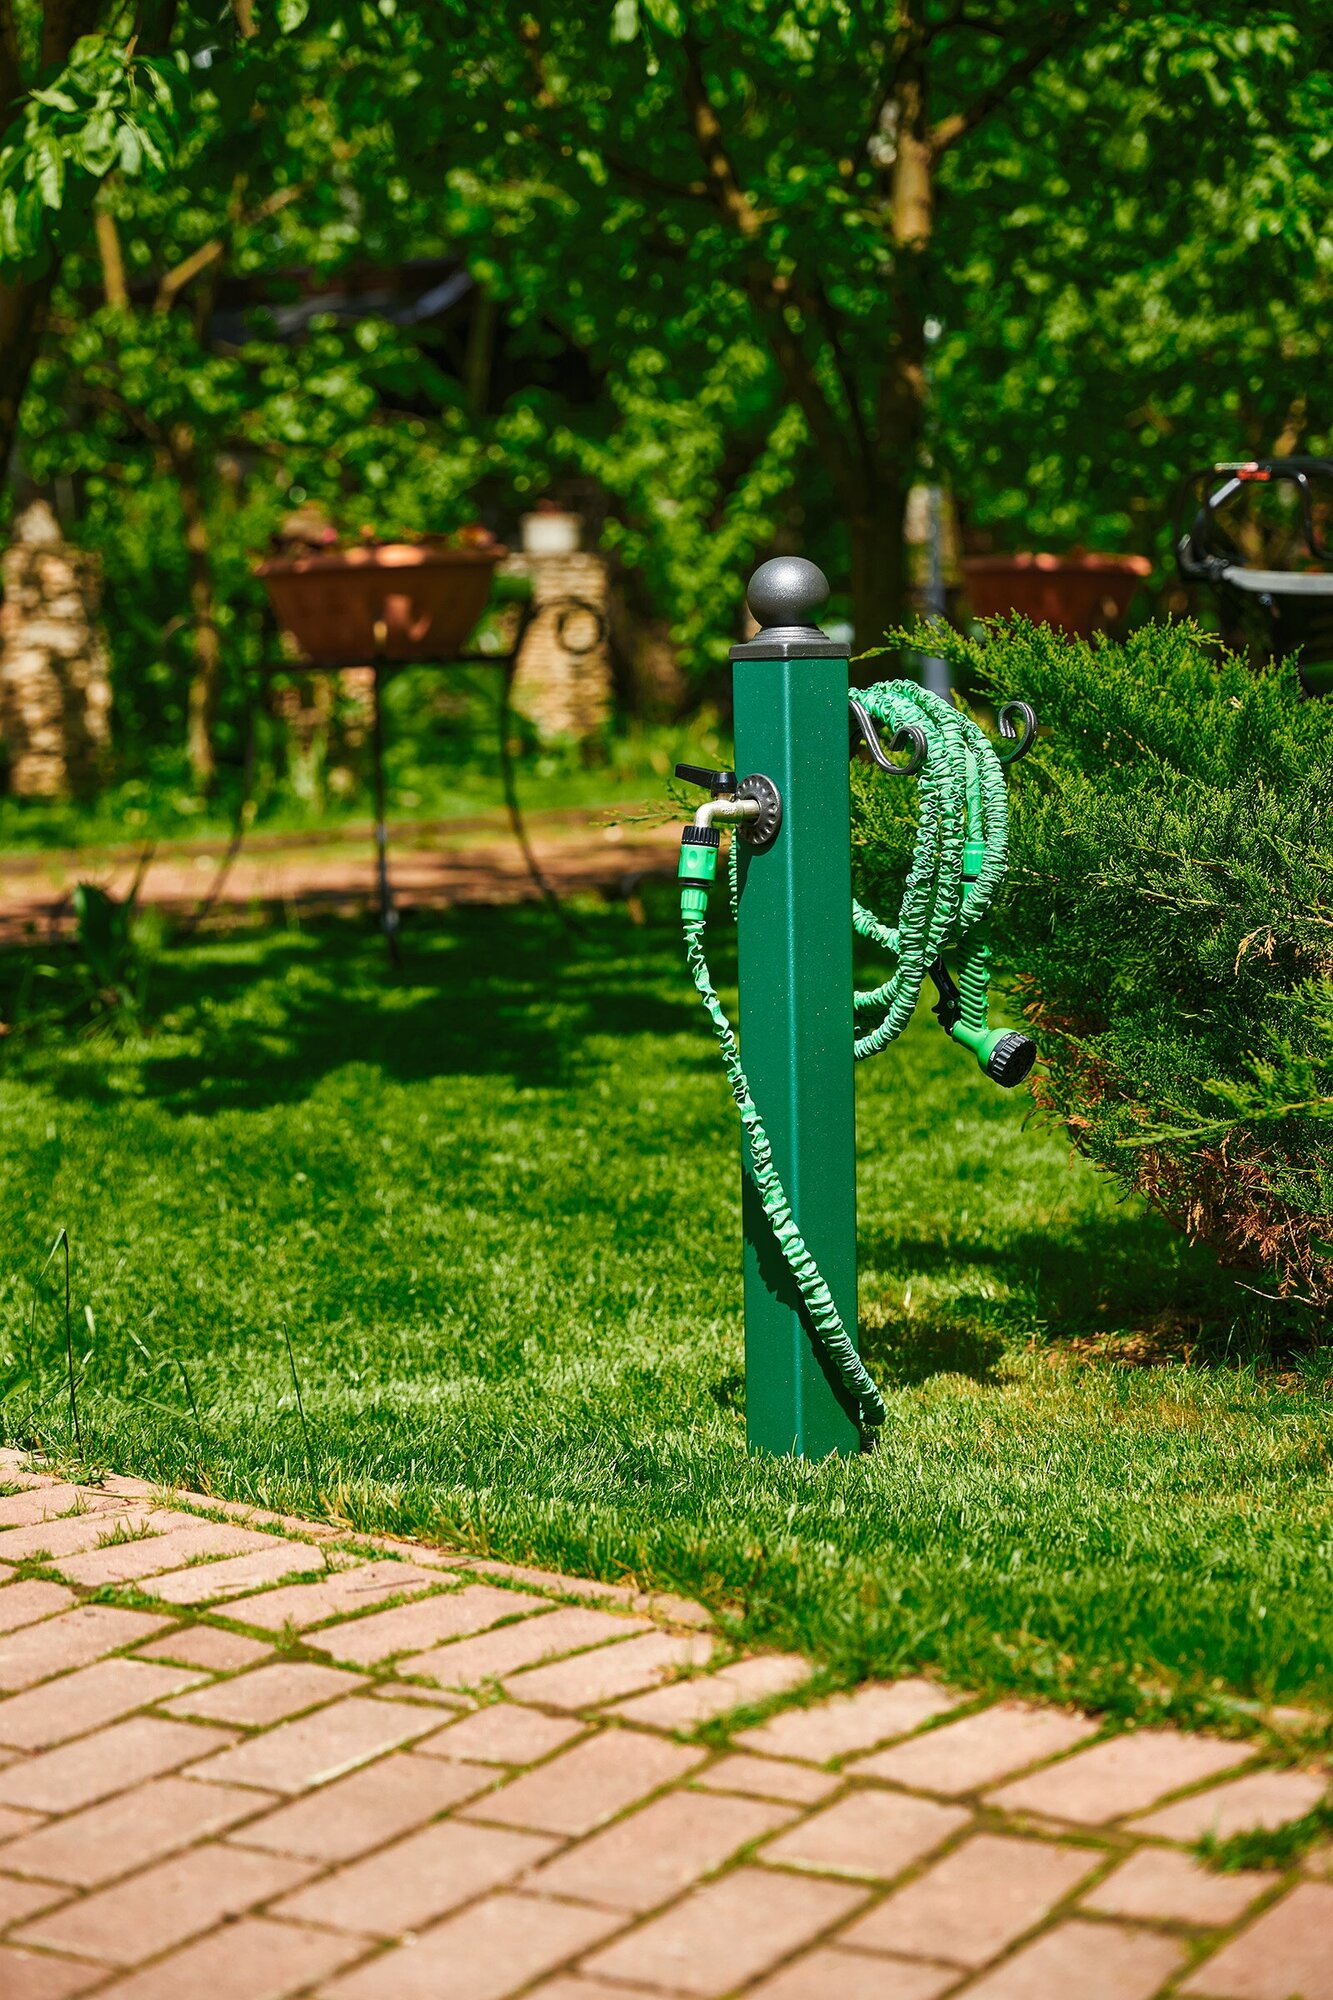 Водоразборная колонка SAHARA GREEN в комплекте с винт опорой для организации полива садовых участков парковых зон / цвет зеленый